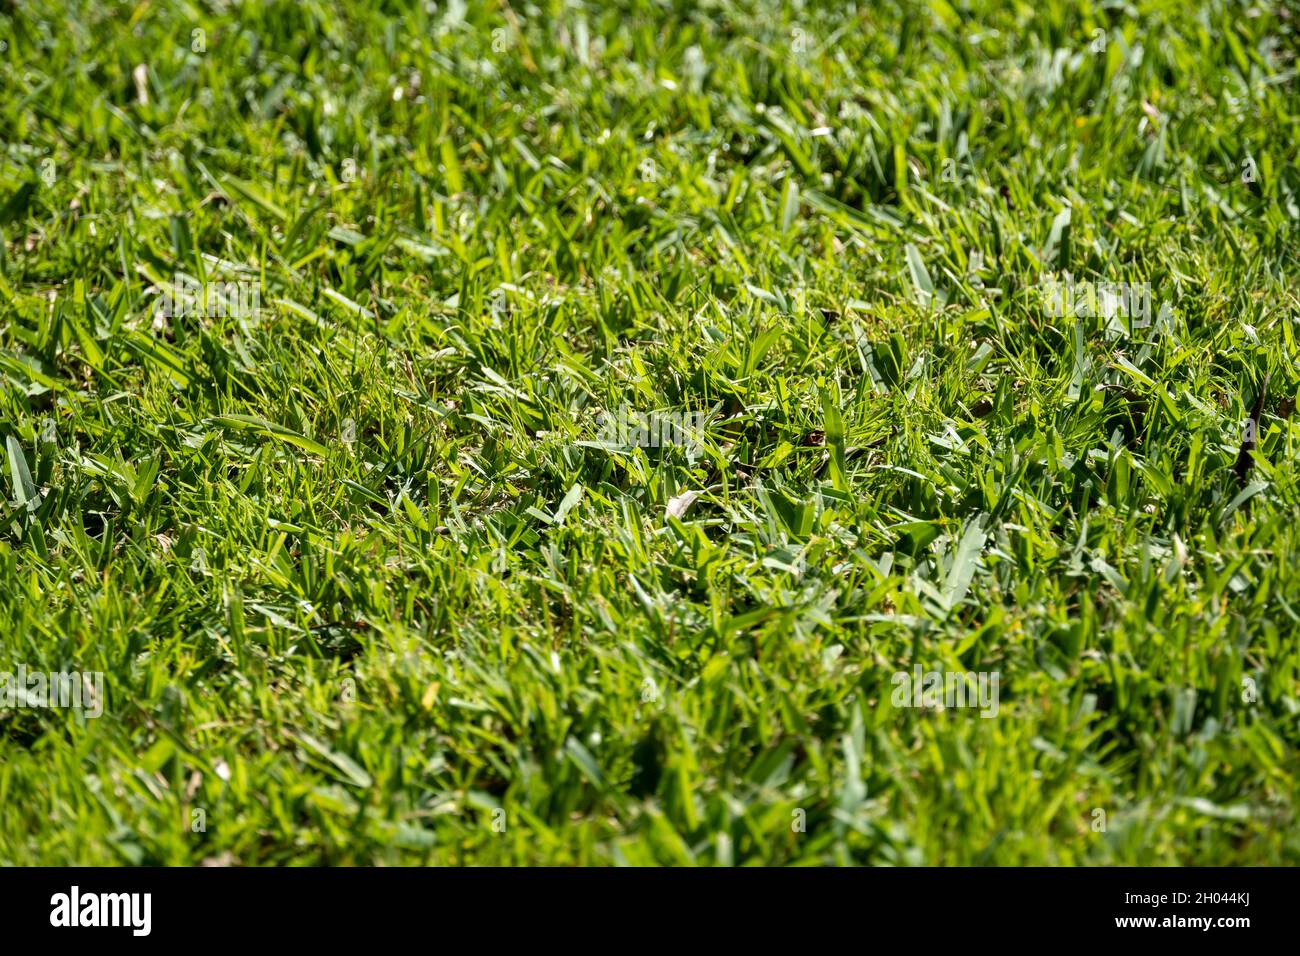 Gros plan sur une pelouse en herbe verte luxuriante Banque D'Images